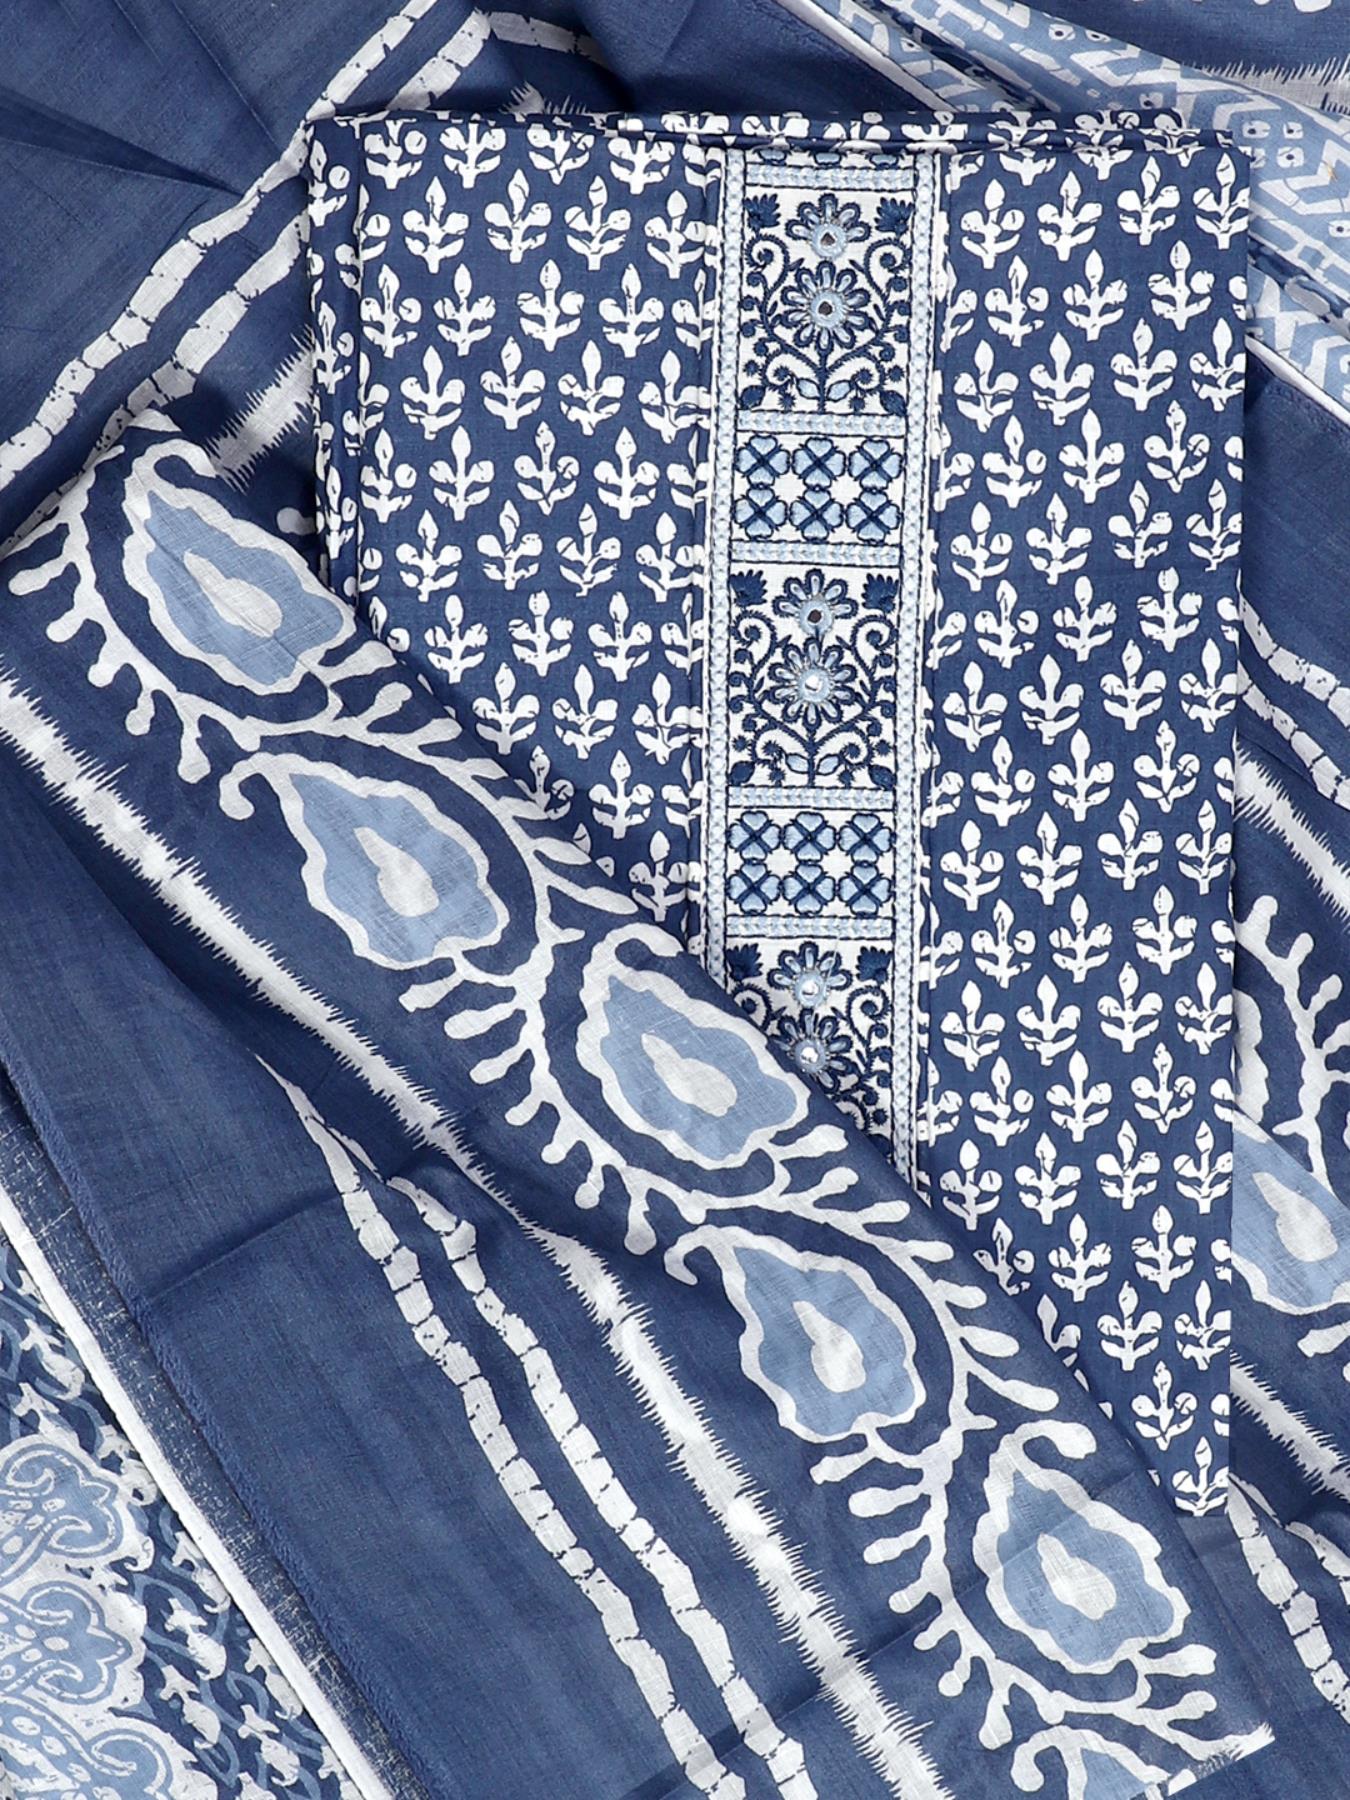 Blue Dabu Printed Unstitch Dress Material with Dupatta